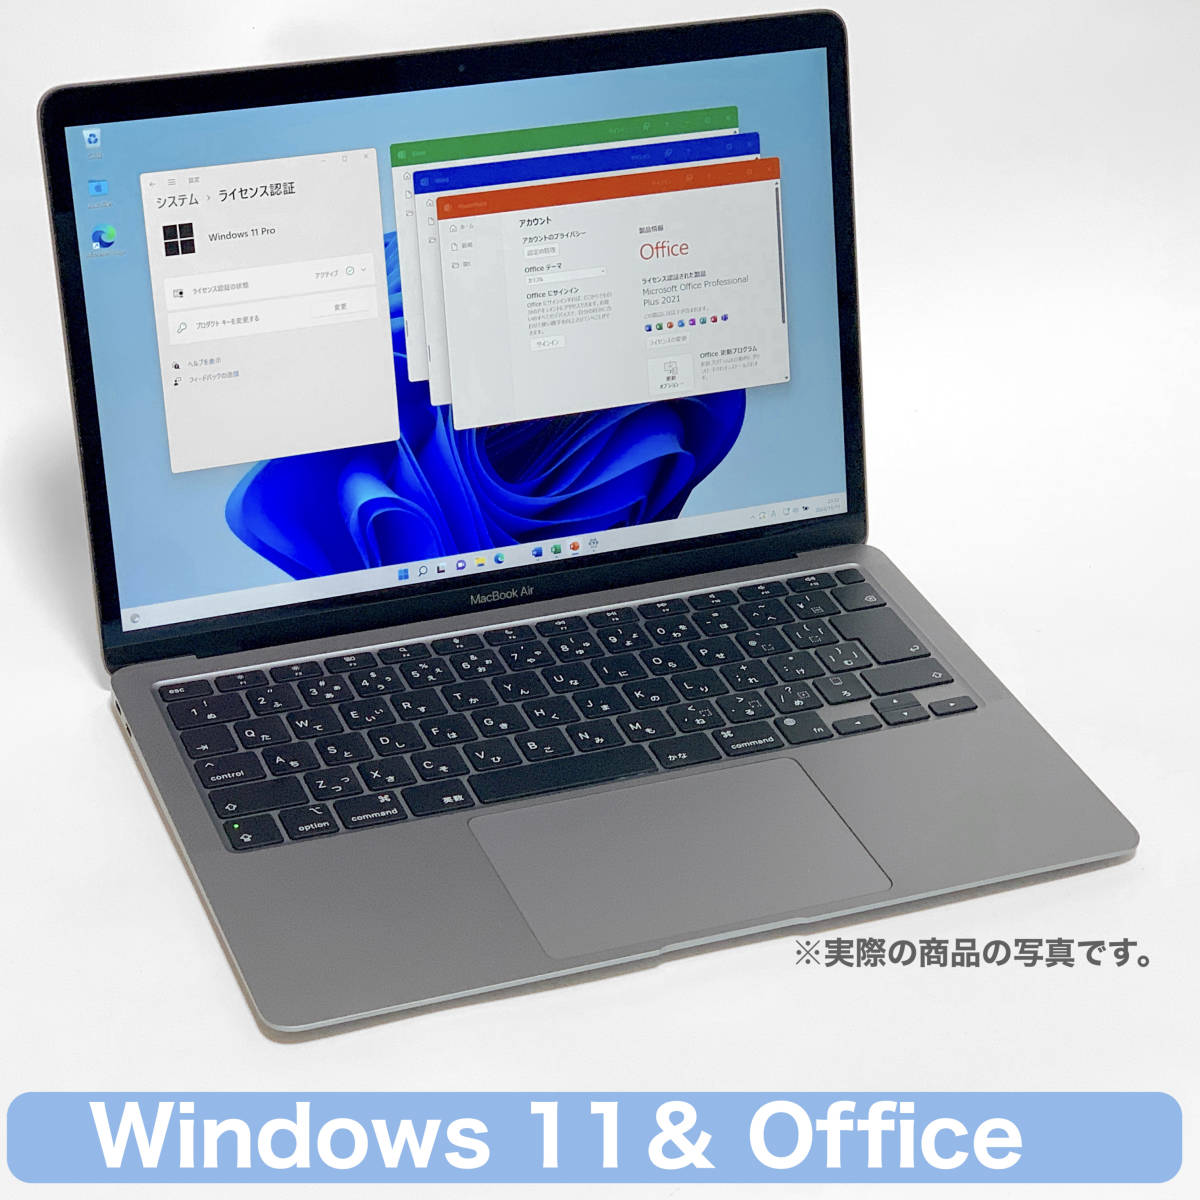 【新品同様】 Macbook Air 2020 M1 8GB 512GB 8GPU上位機種 + Parallels Desktop 17 永久版ライセンス付属 Windows 11 & Office MGN73J/A_画像10